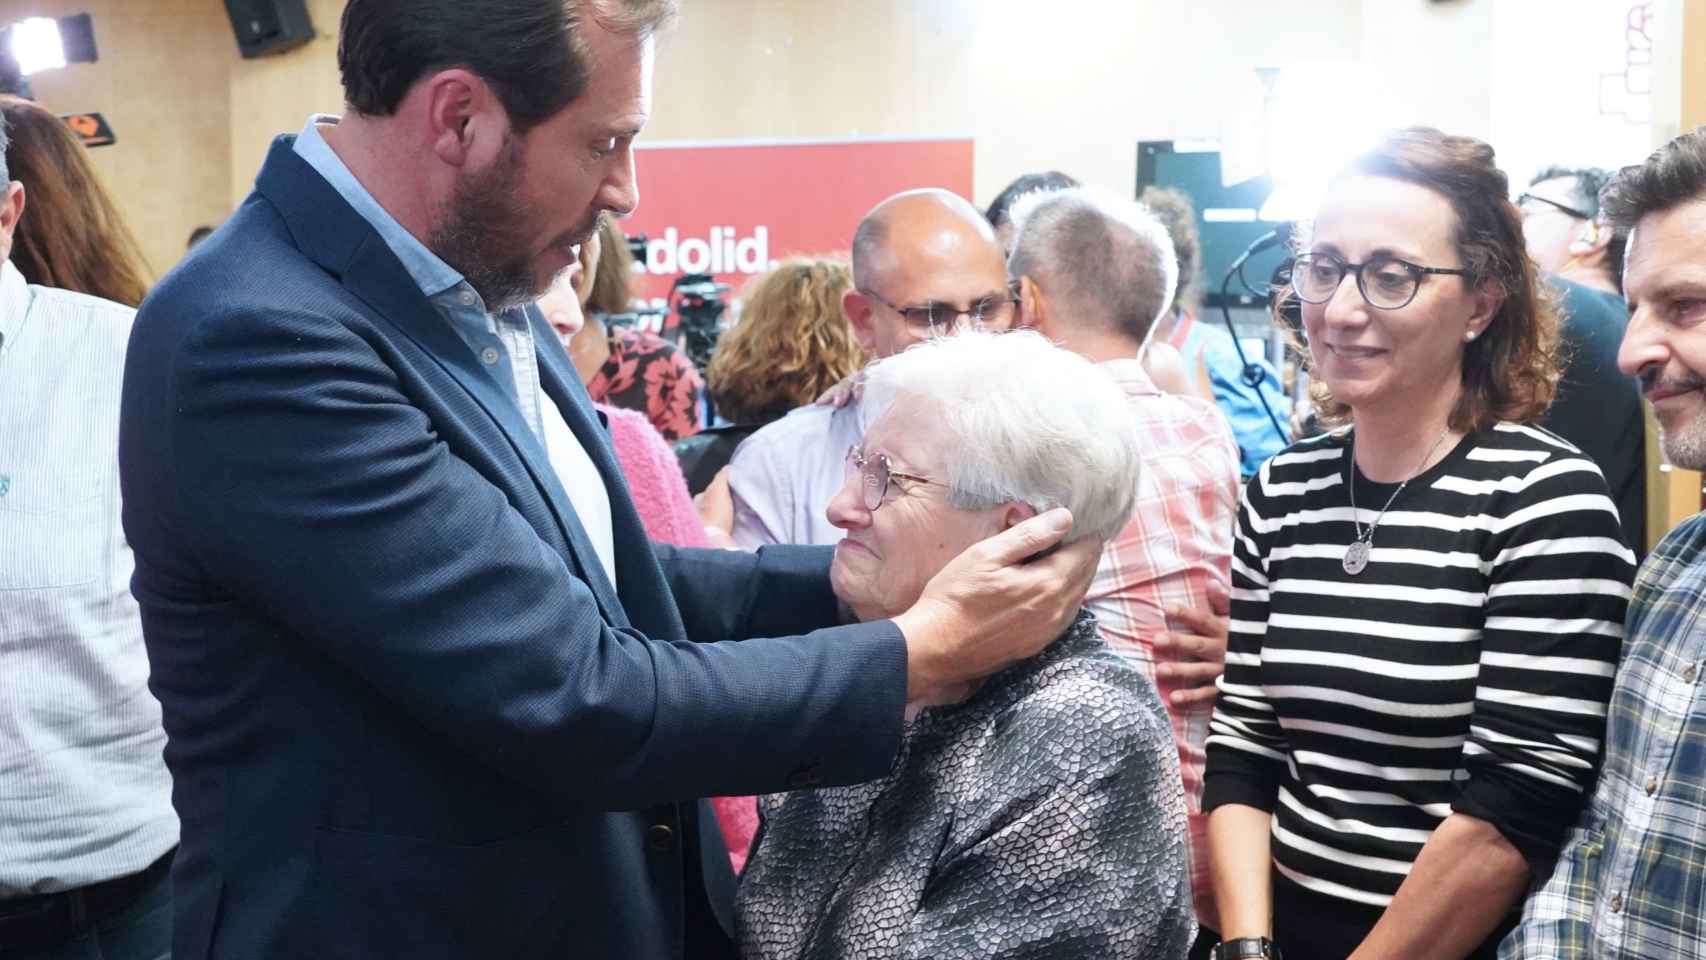 El candidato socialista a la alcaldía de Valladolid, Óscar Puente, tras el resultado electoral